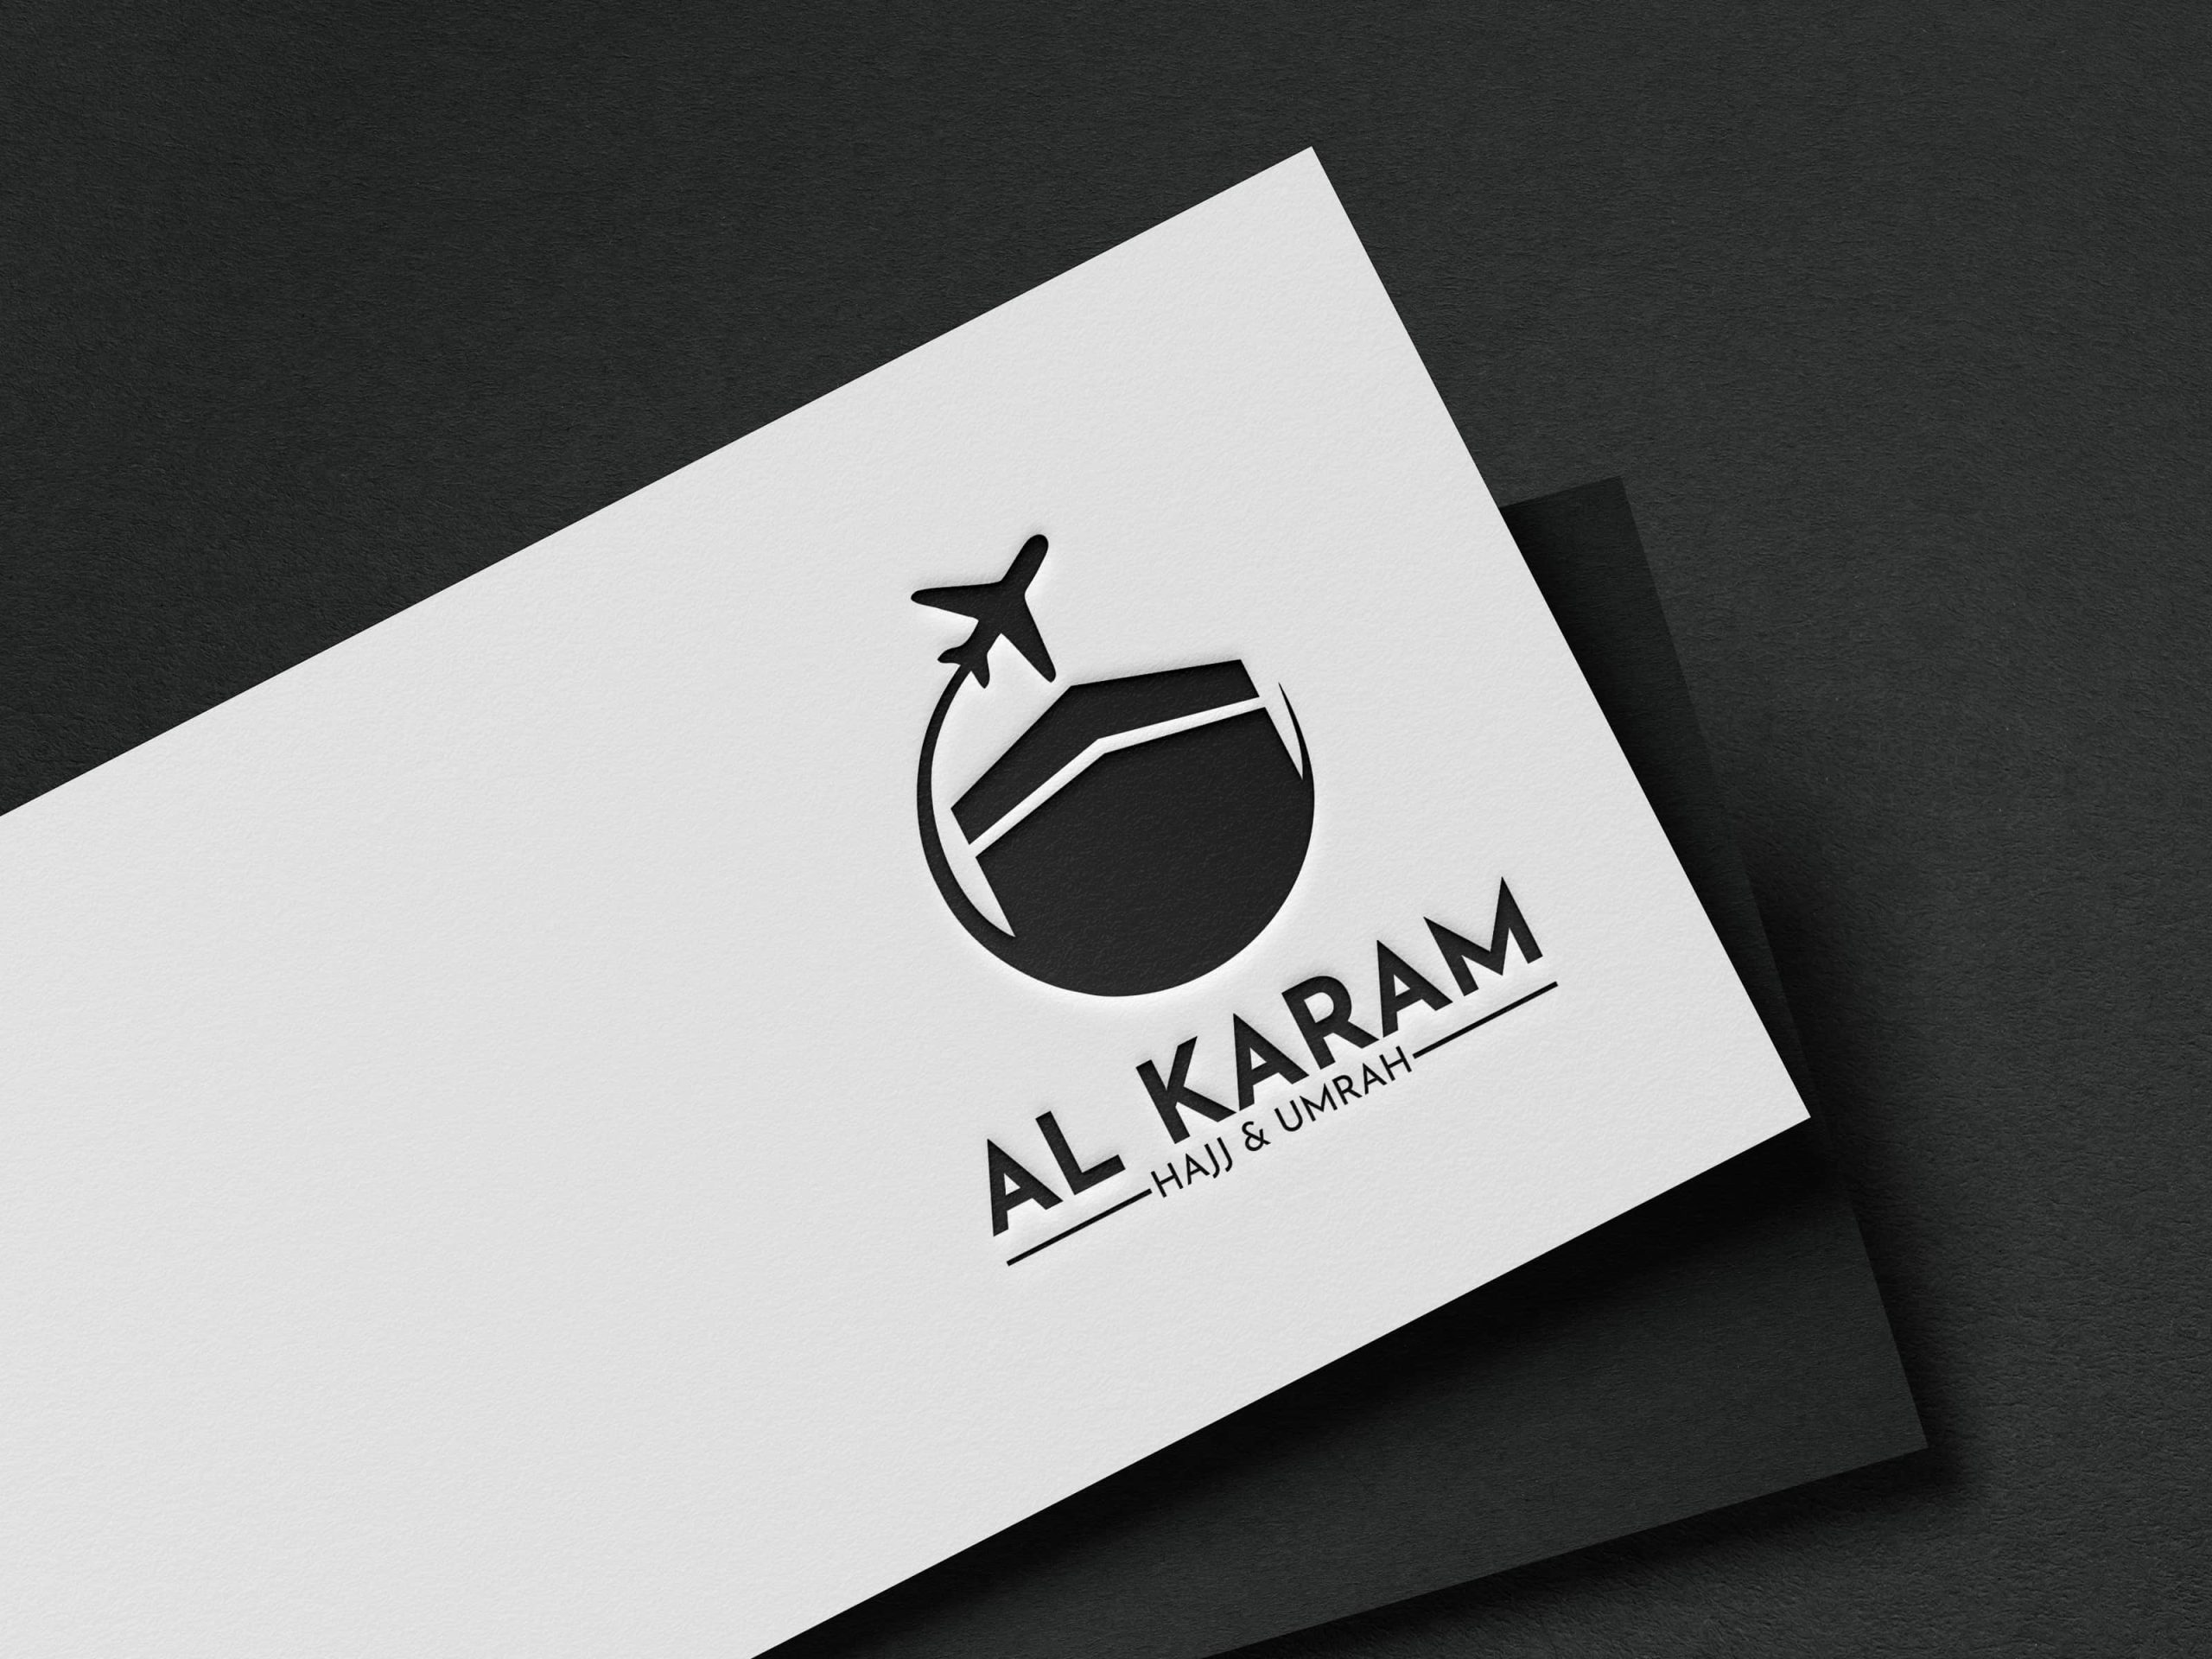 Al-karam